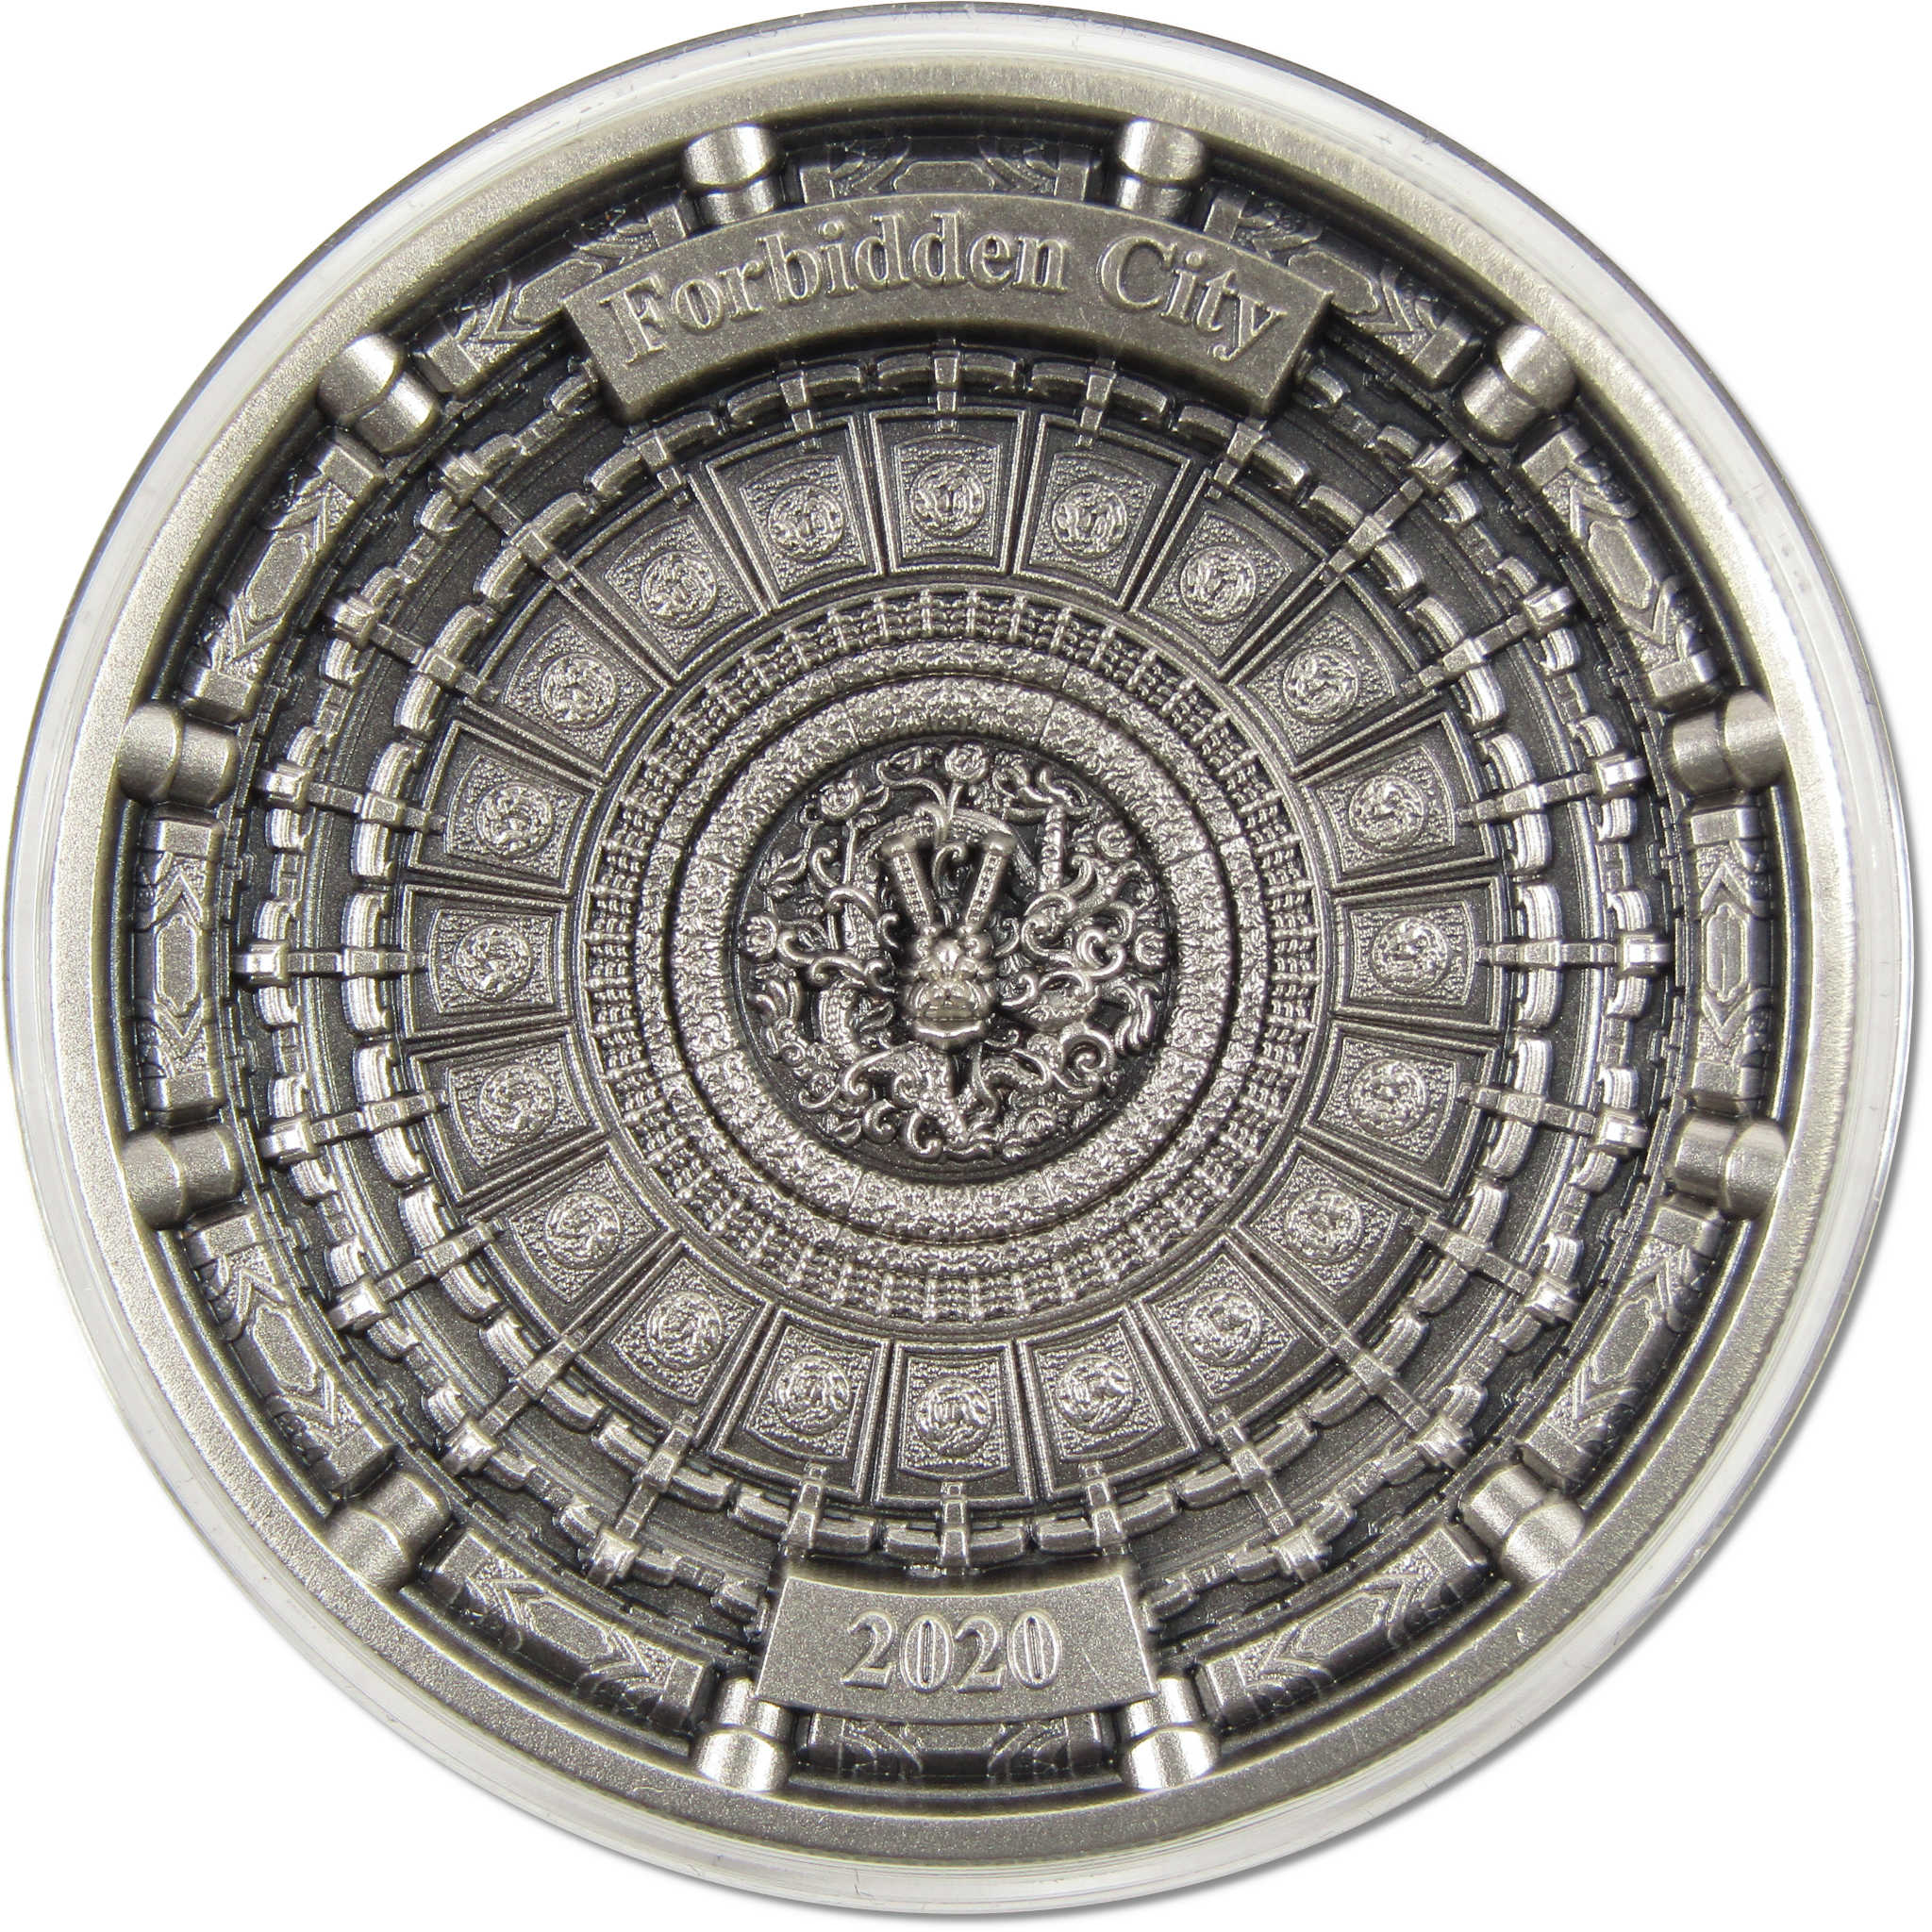 Forbidden City 100 g .999 Silver $10 Coin 2020 Solomon Islands COA